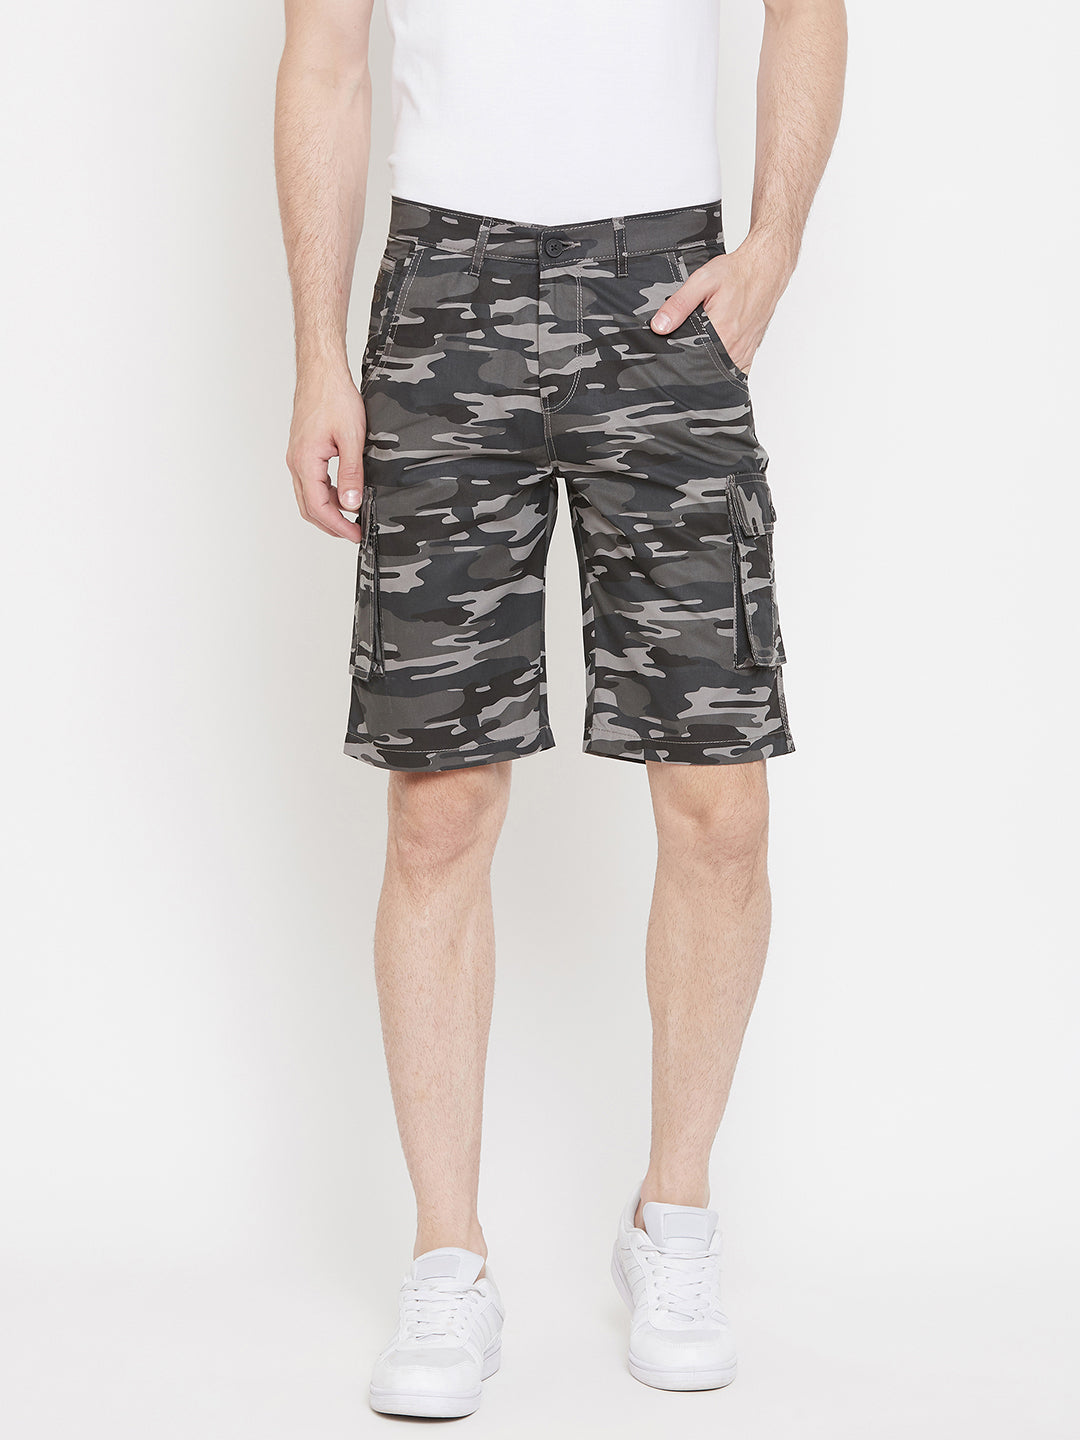 Grey Printed shorts - Men Shorts